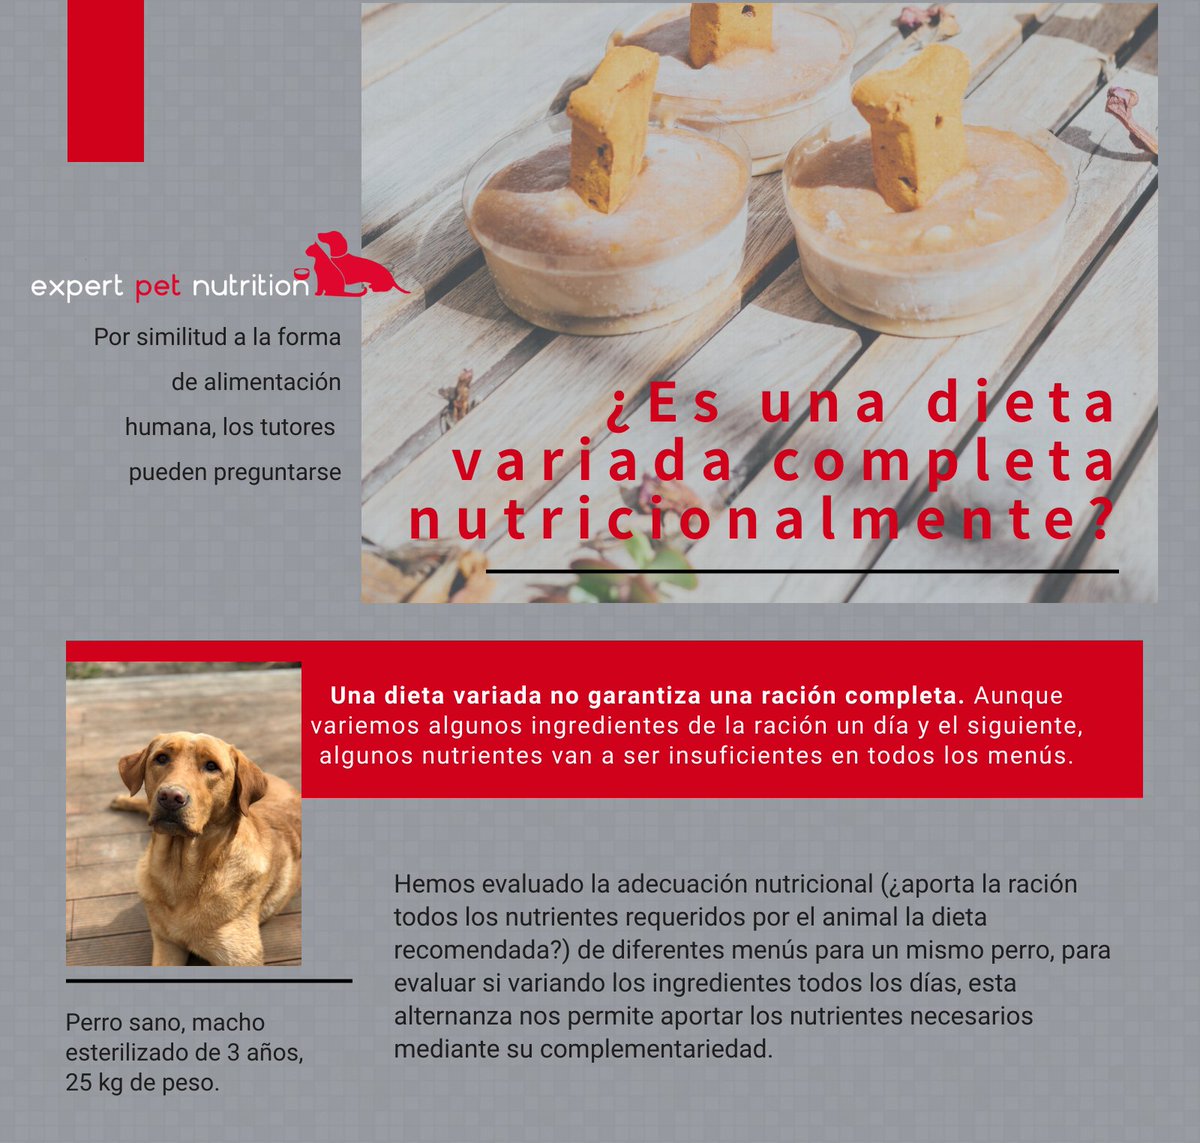 Expert Pet Nutrition – Descripción de la empresa